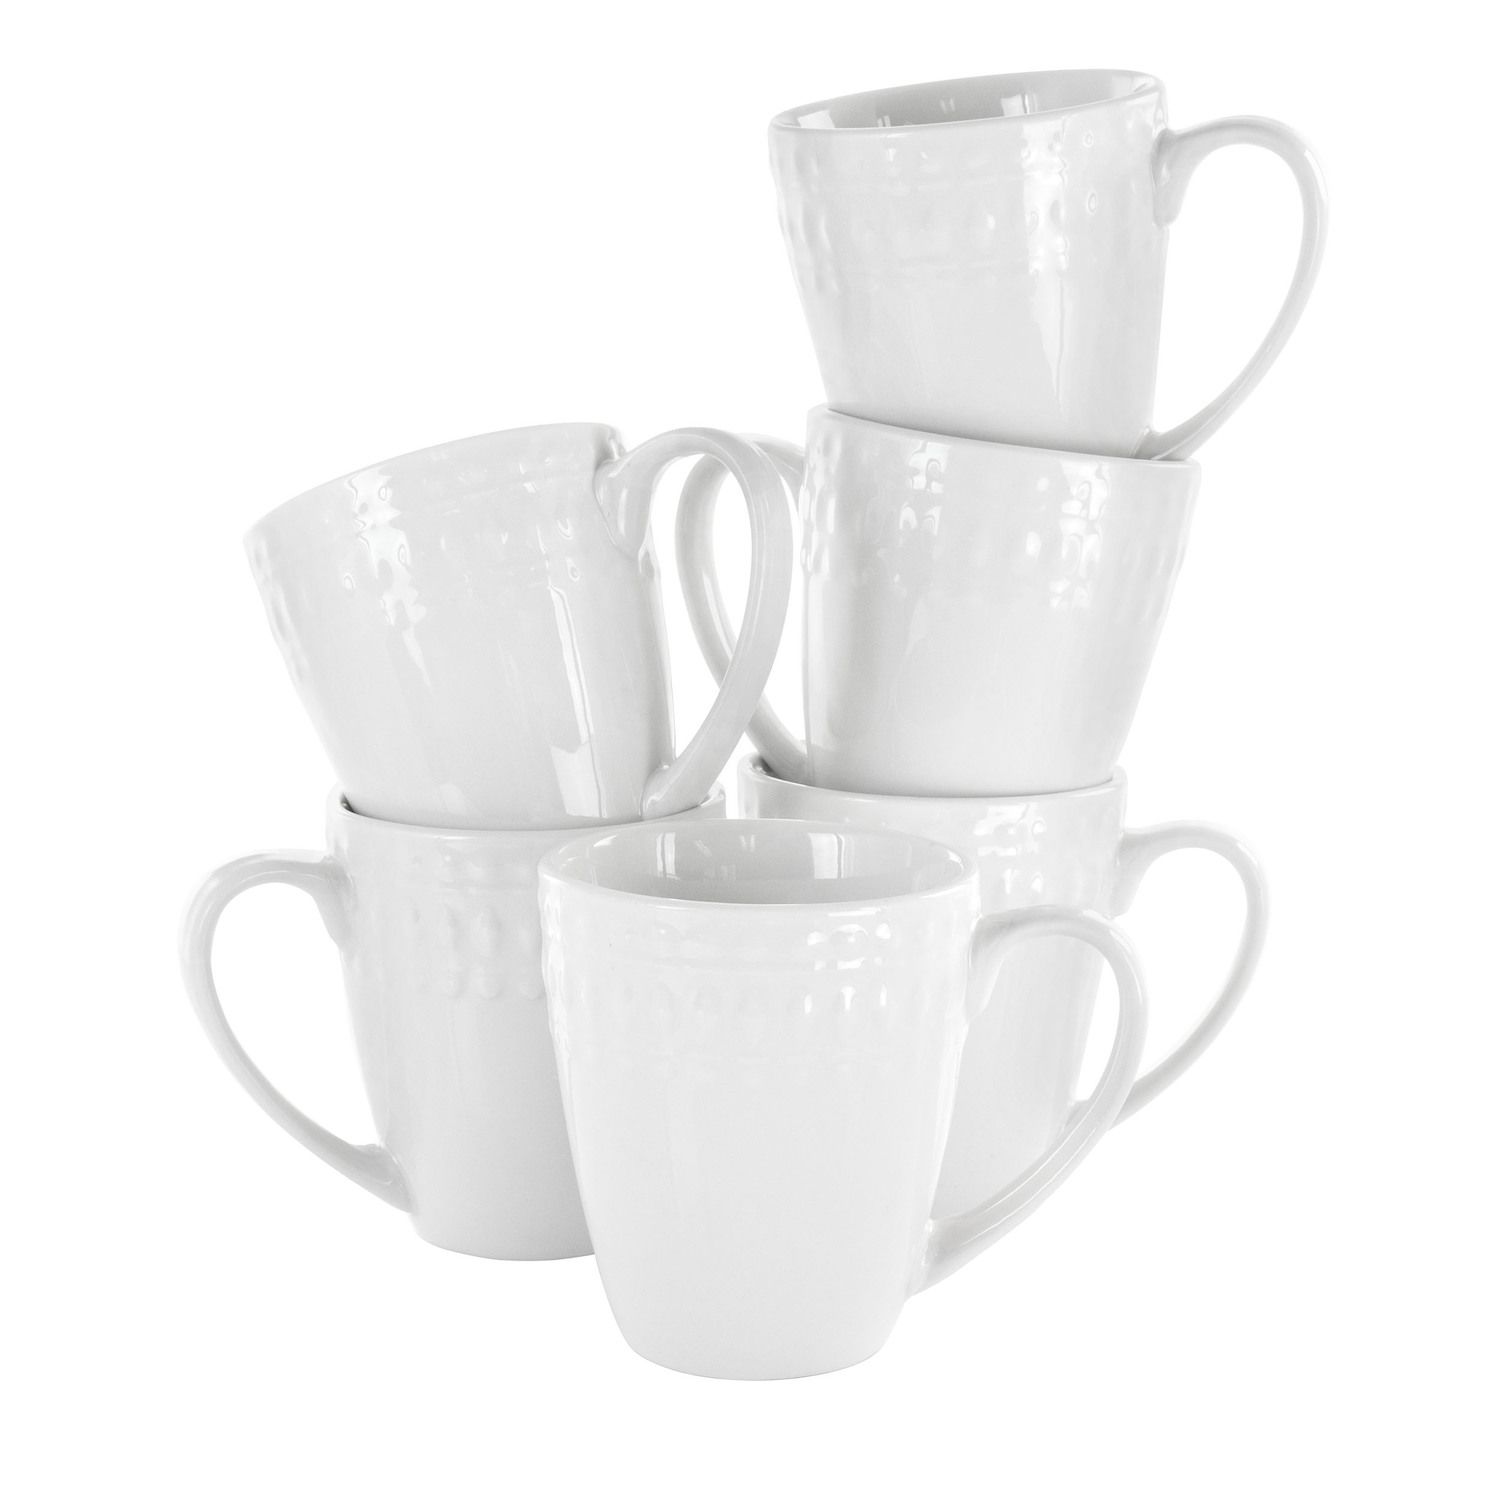 10 oz. Coffee Mugs, 6-pack, 1 each - King Soopers